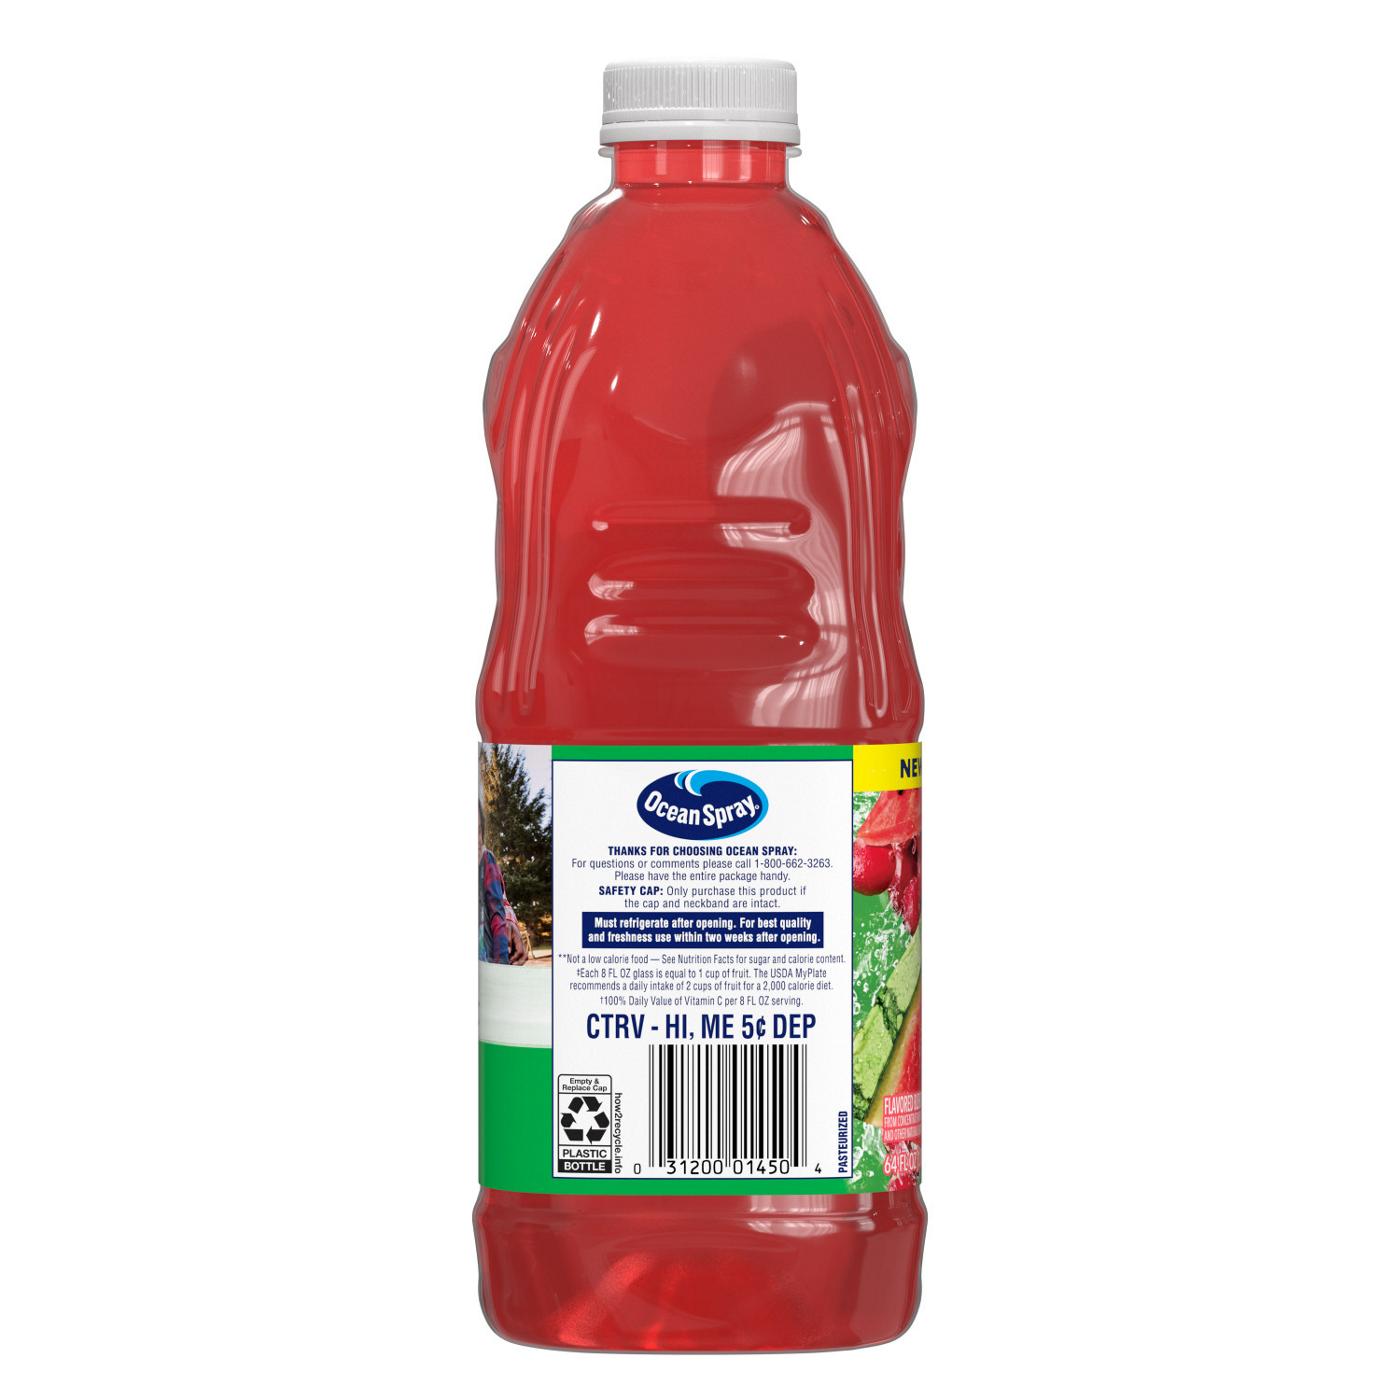 Ocean Spray No Sugar Added 100% Juice Cranberry Watermelon Juice Drink; image 6 of 6